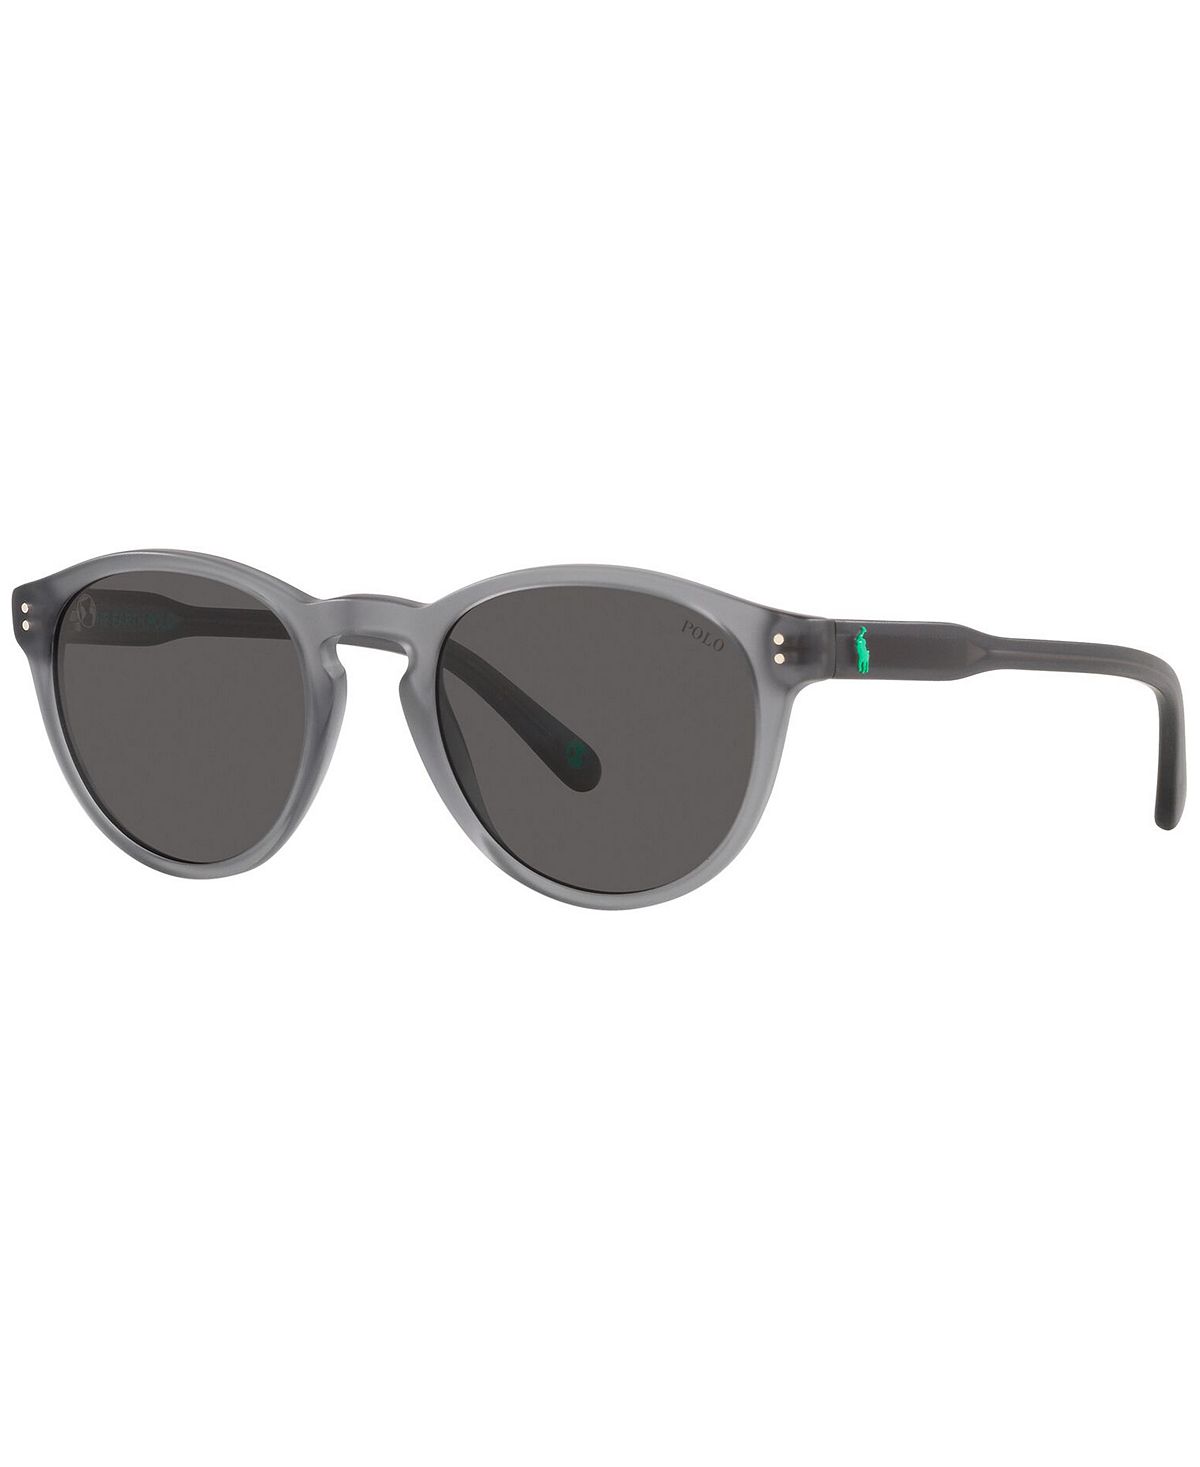 Мужские солнцезащитные очки, PH4172 50 Polo Ralph Lauren мужские солнцезащитные очки ph4172 50 polo ralph lauren